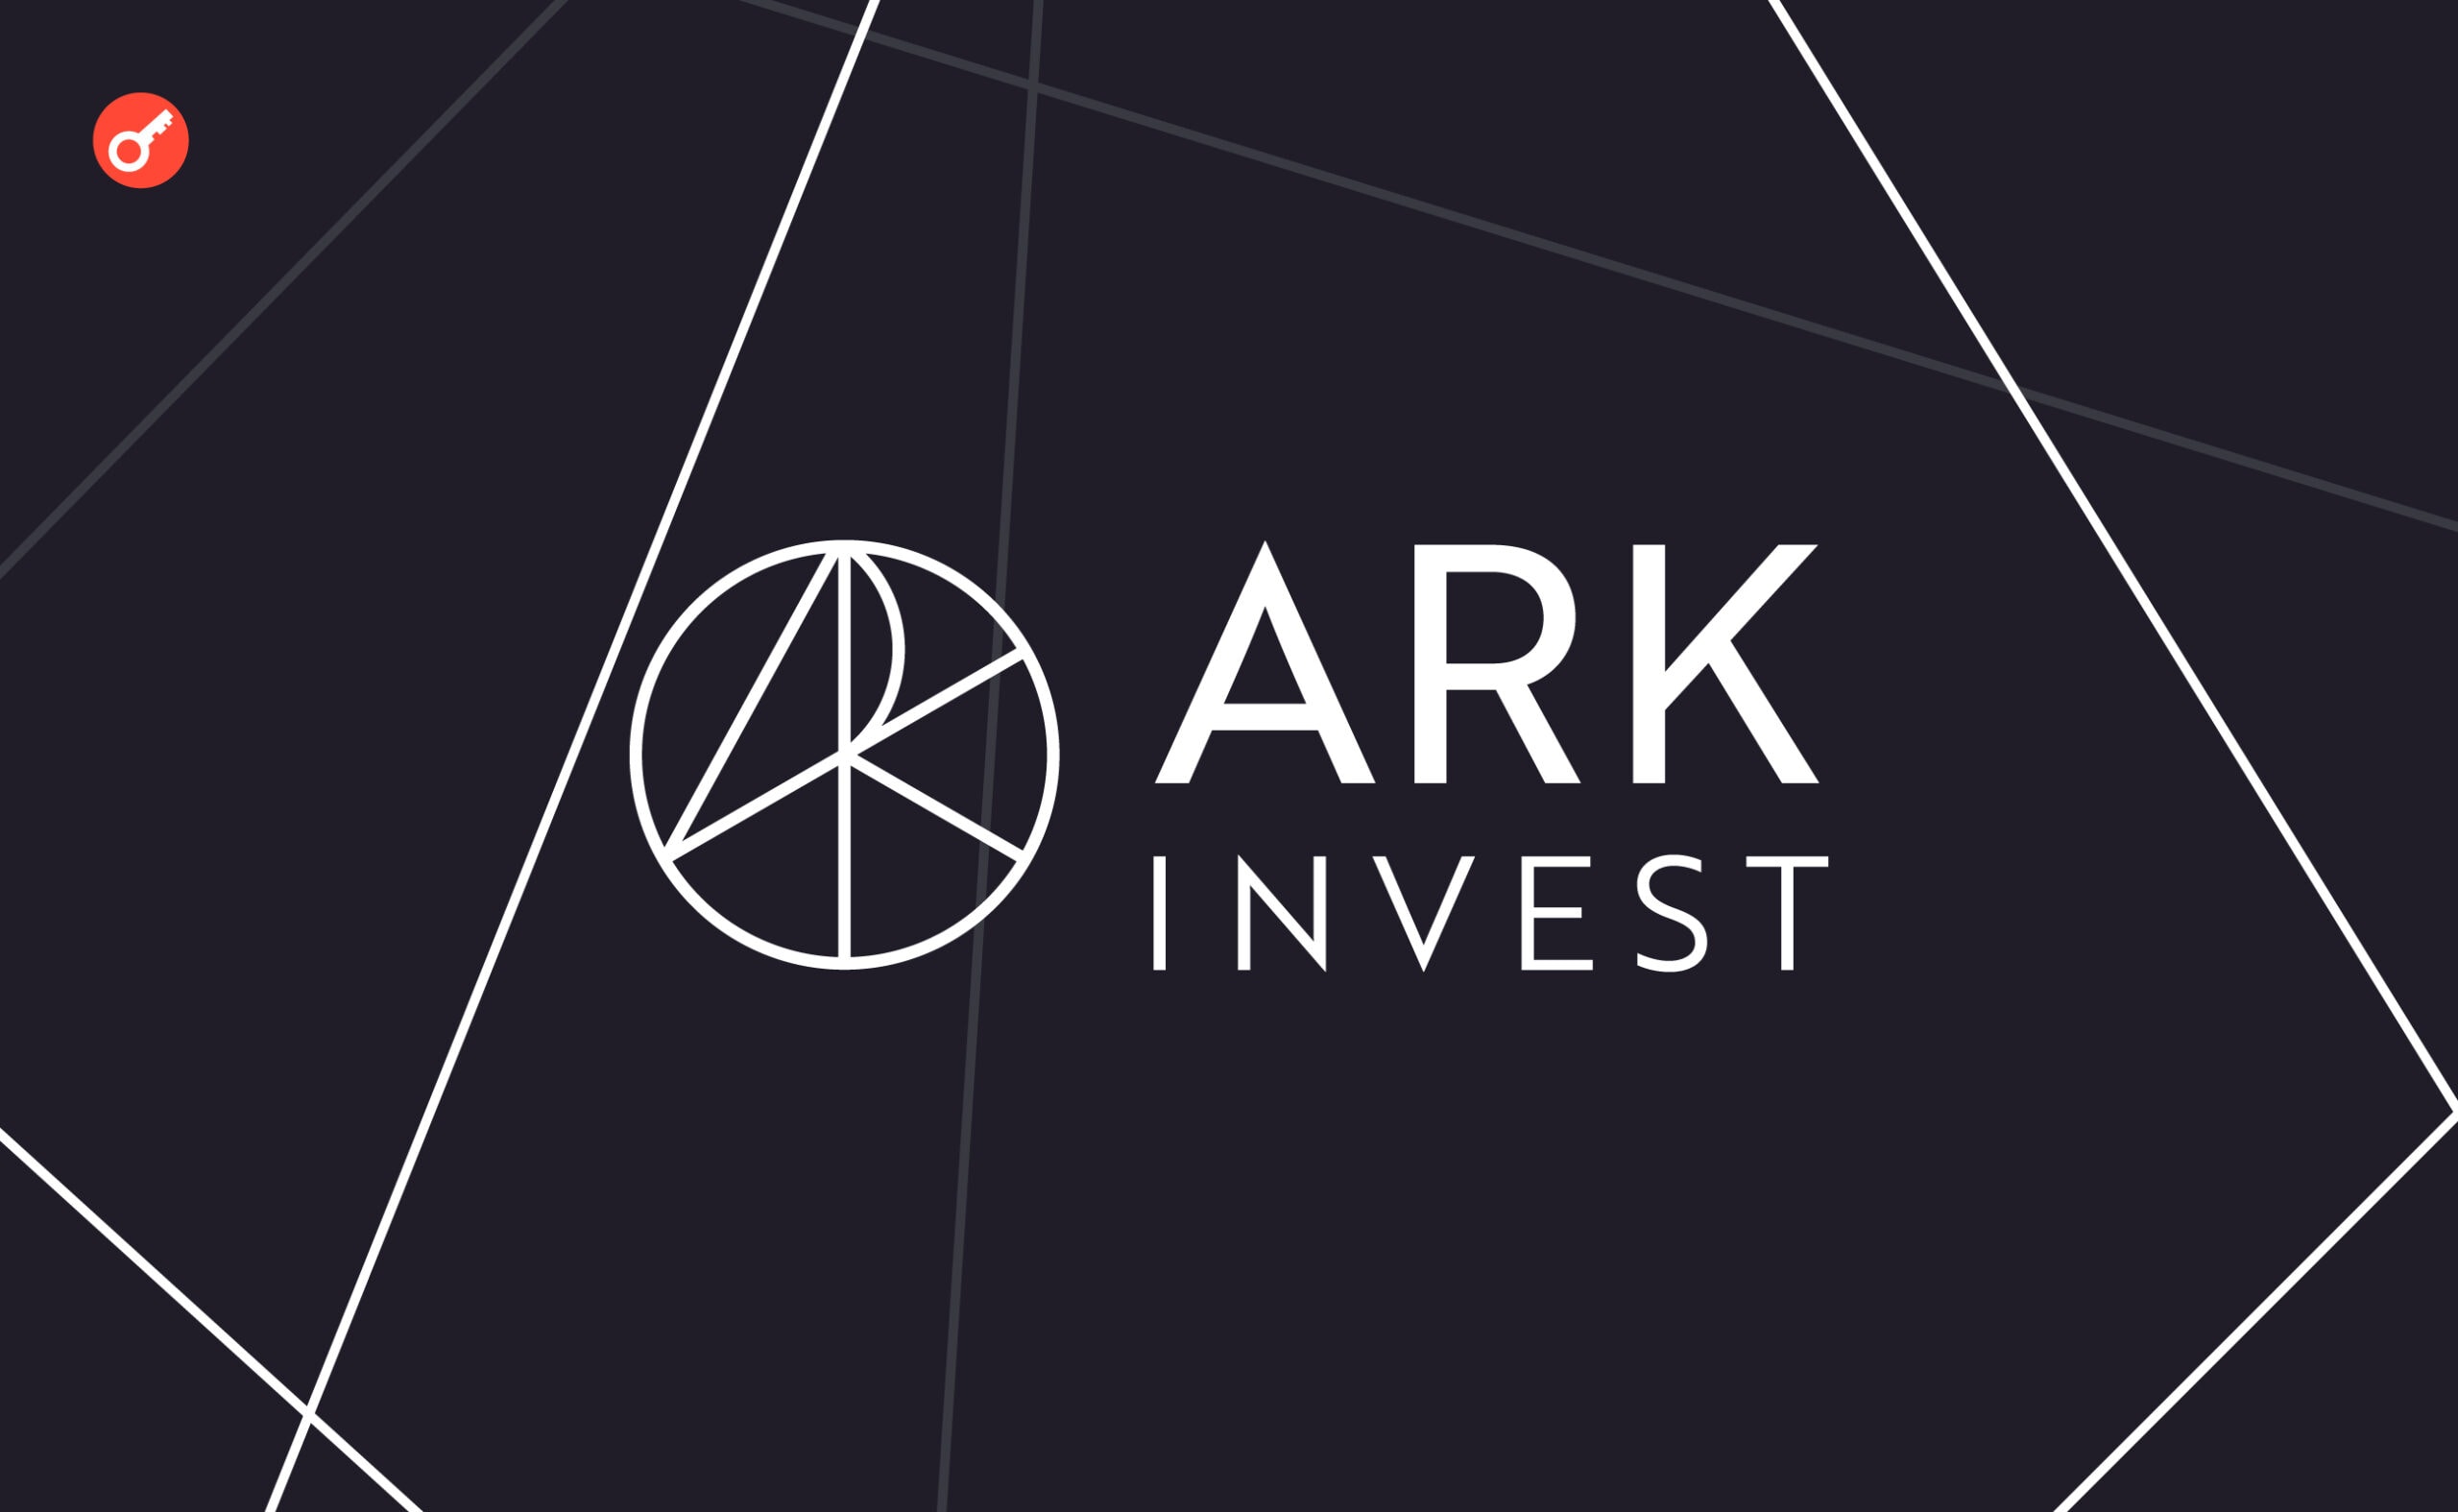 Ark Invest купила акции Robinhood на $9,5 млн после свежего анонса компании. Заглавный коллаж новости.